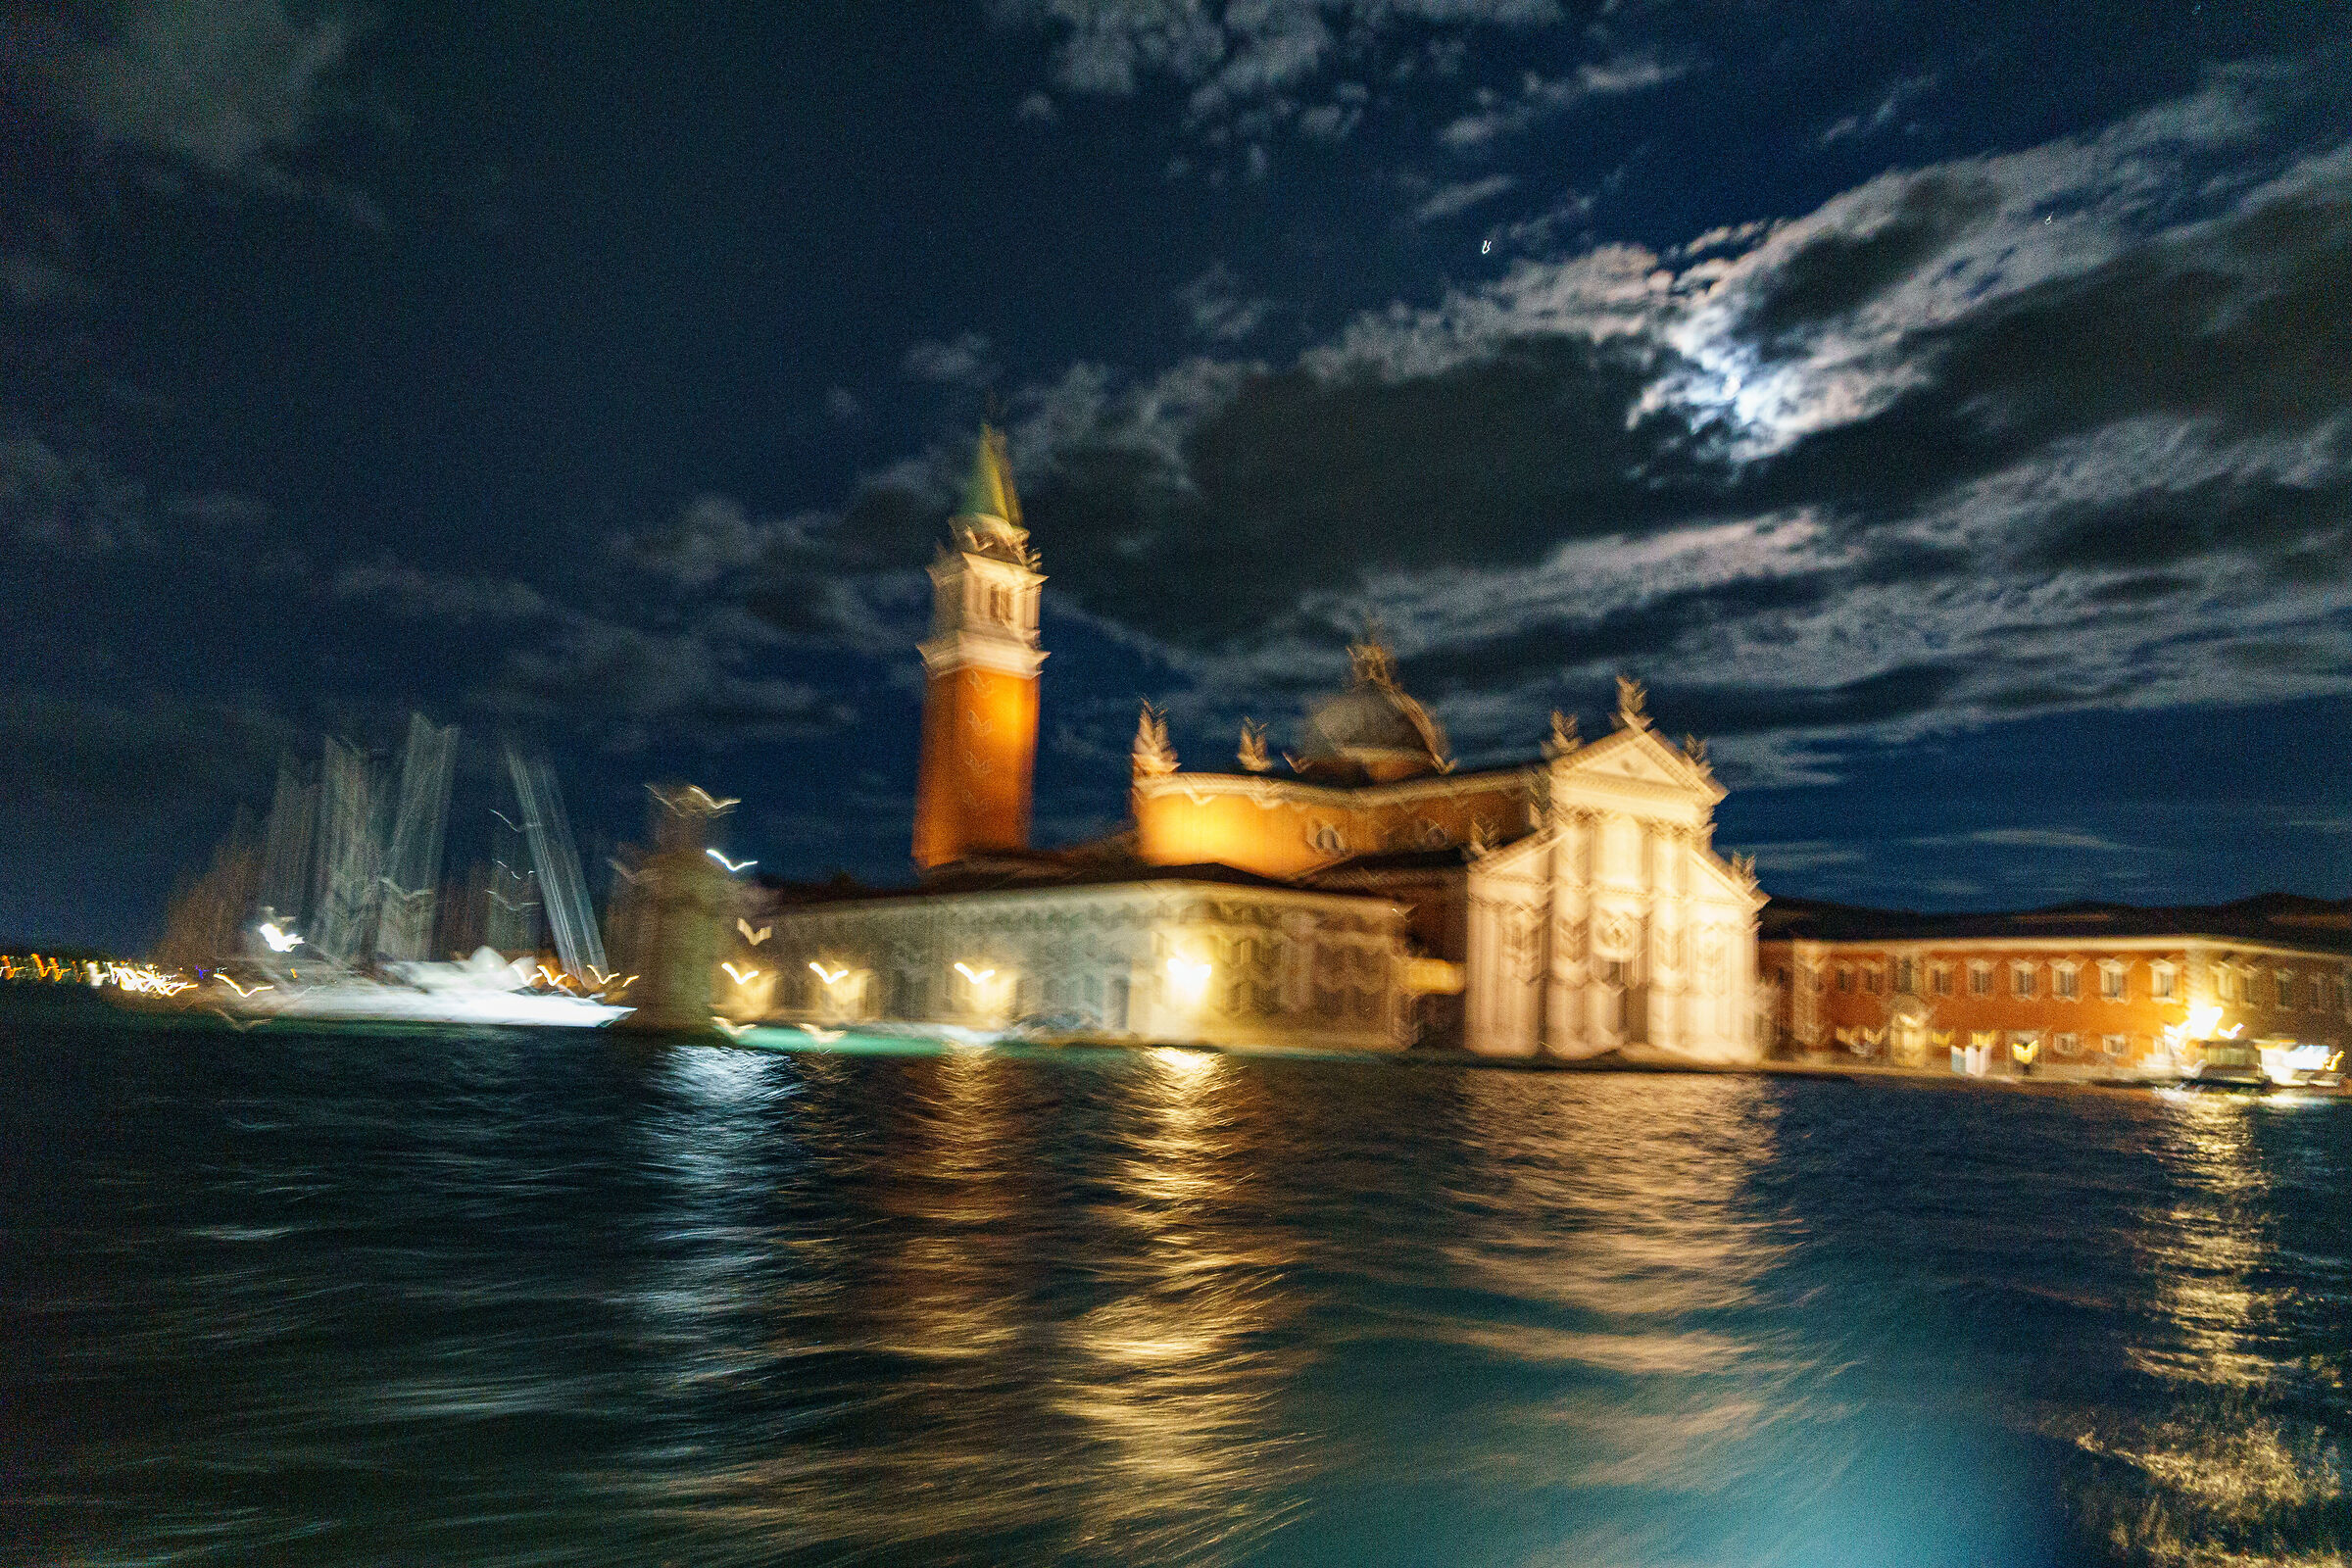 San Giorgio Maggiore at night...